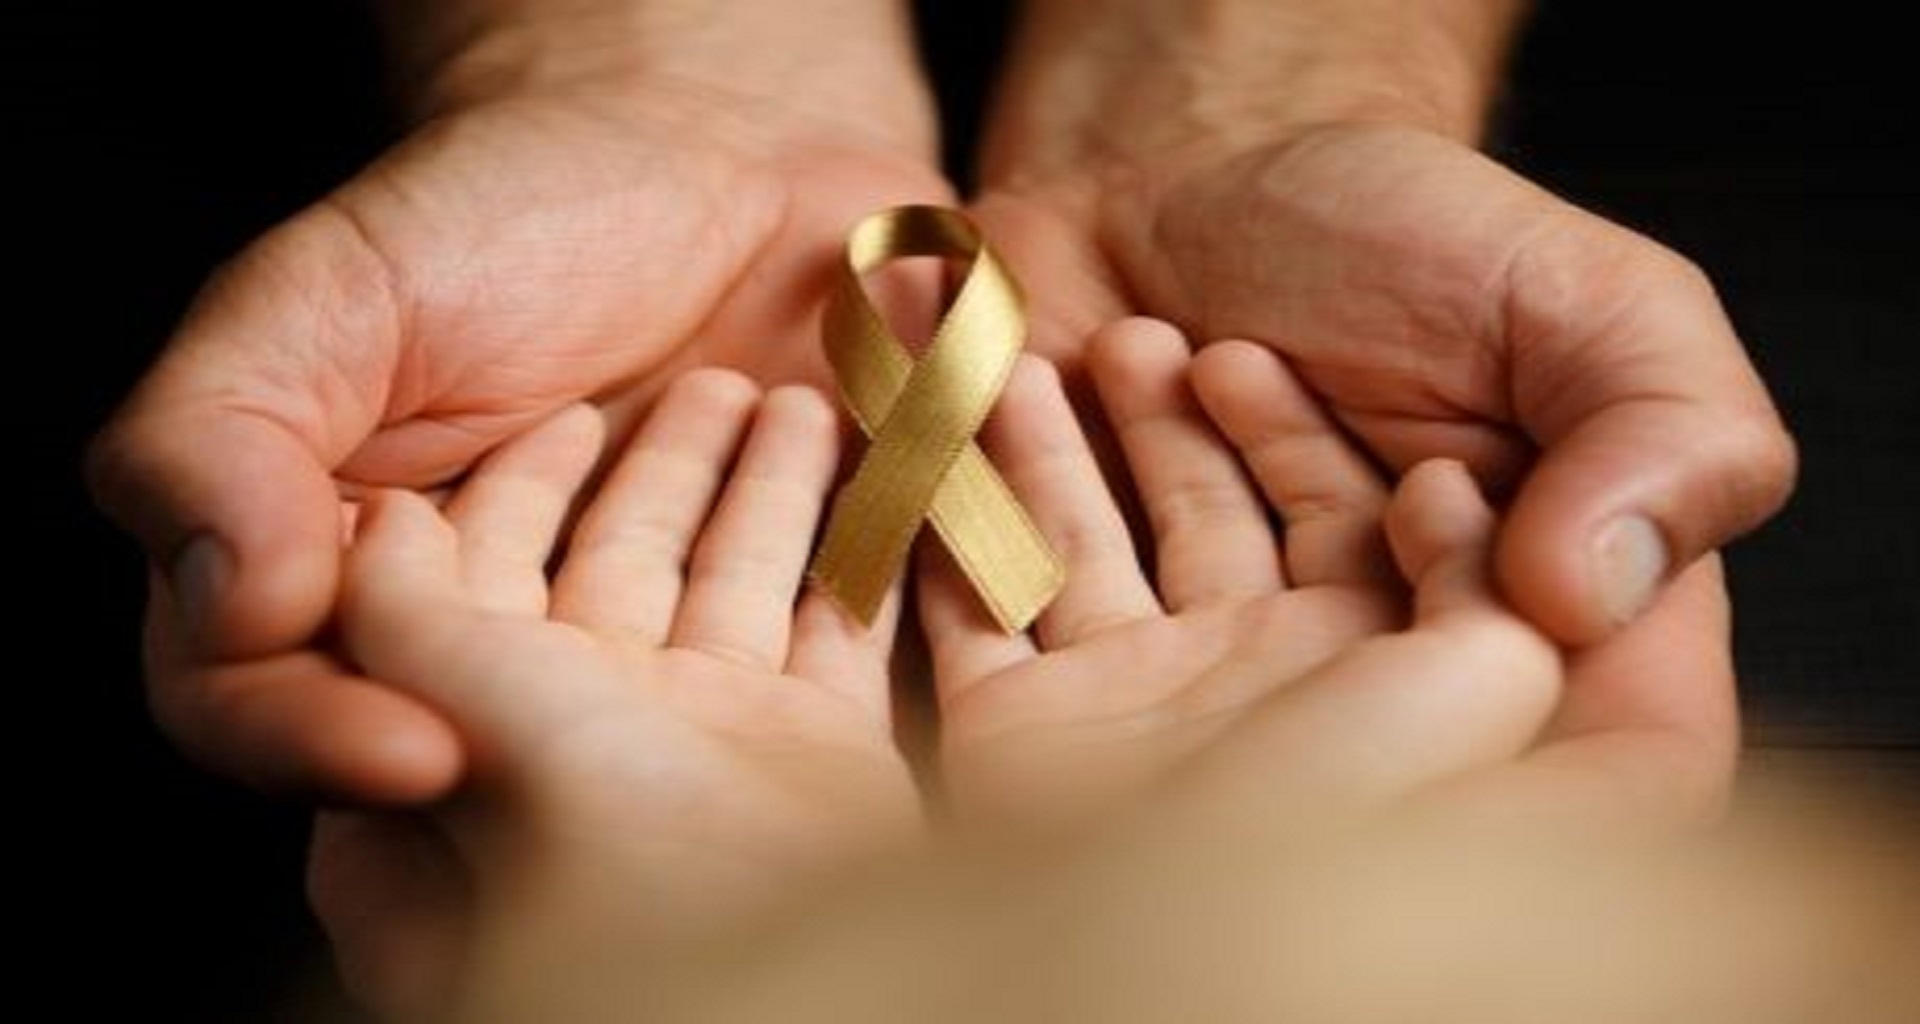 Έρευνα: Η Κύπρος έχει από τα υψηλότερα ποσοστά περιπτώσεων παιδικού καρκίνου